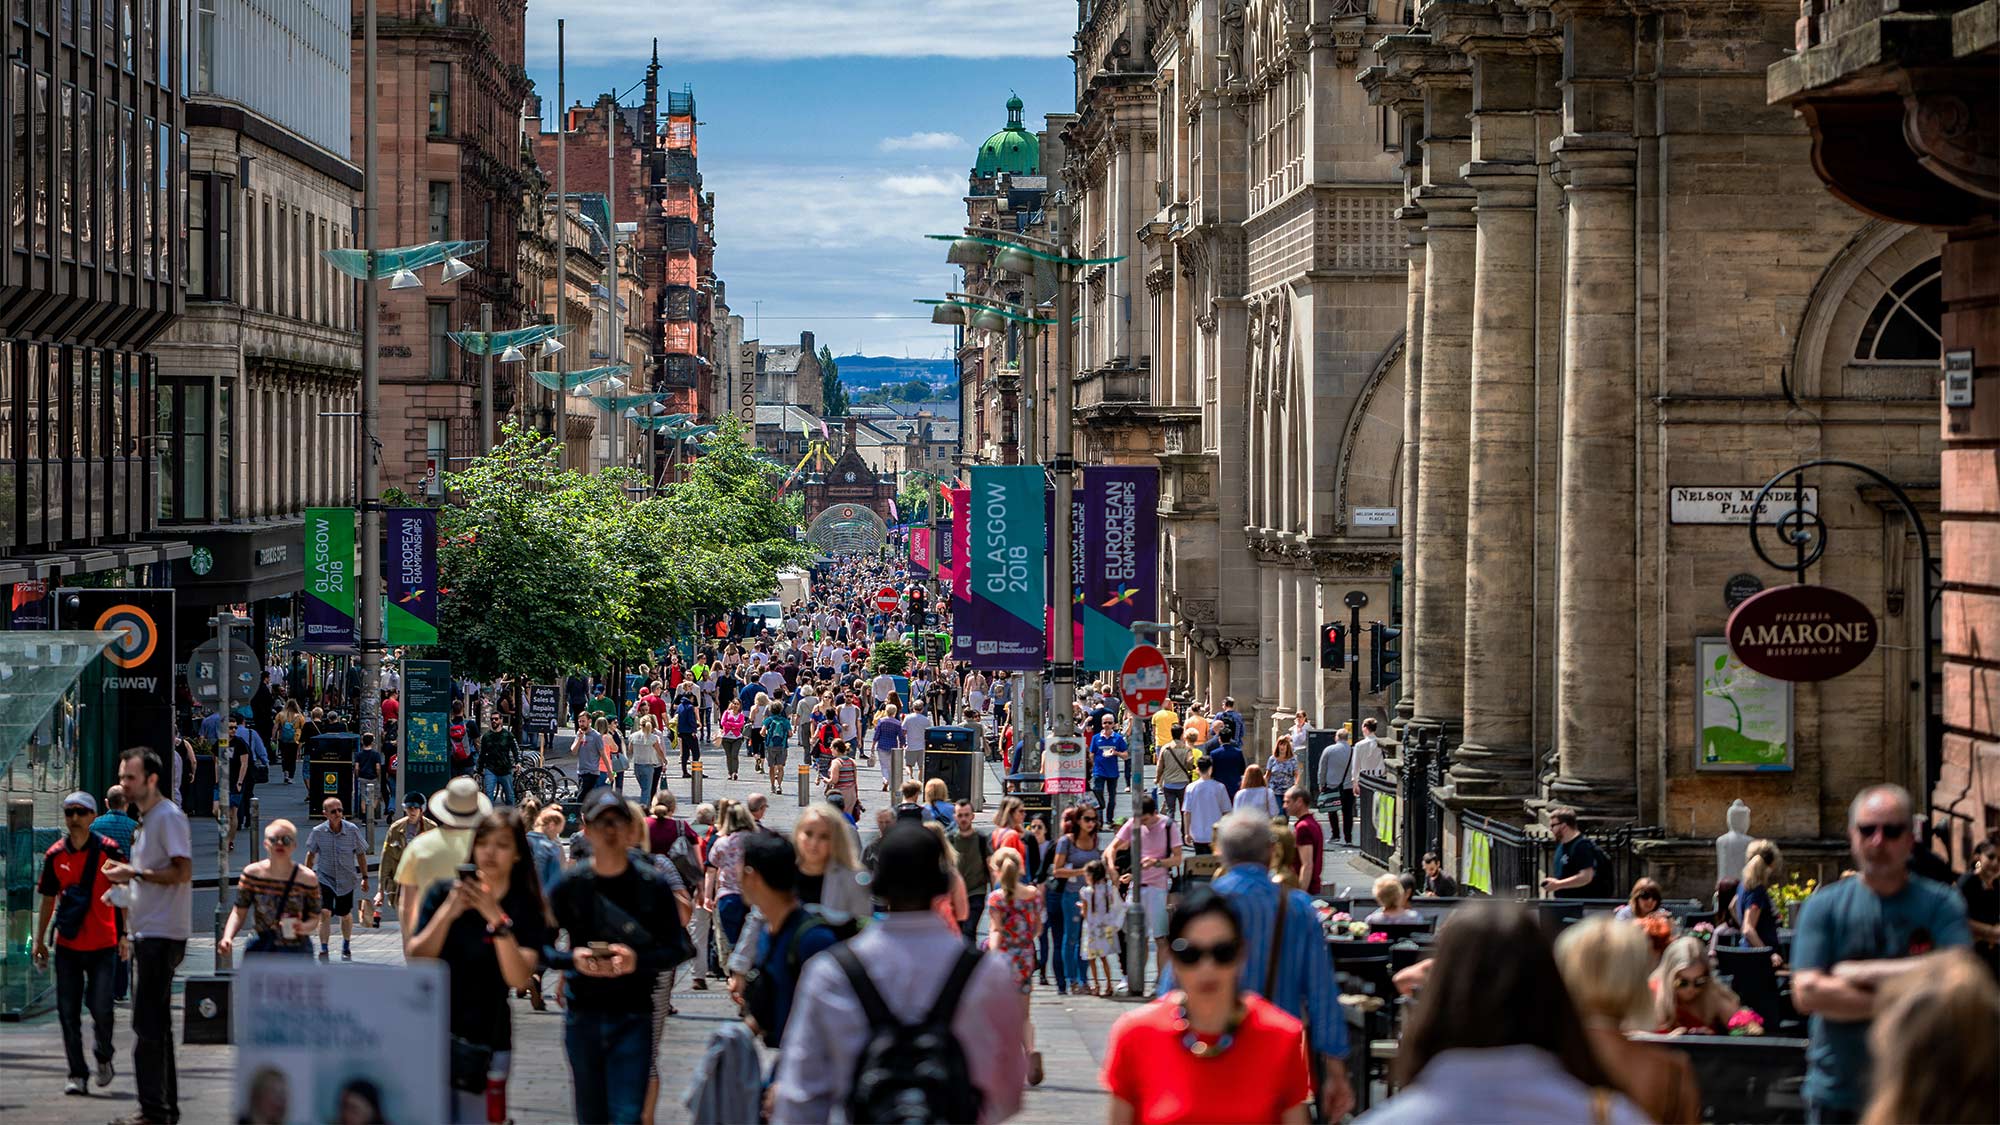 Glasgow city streets